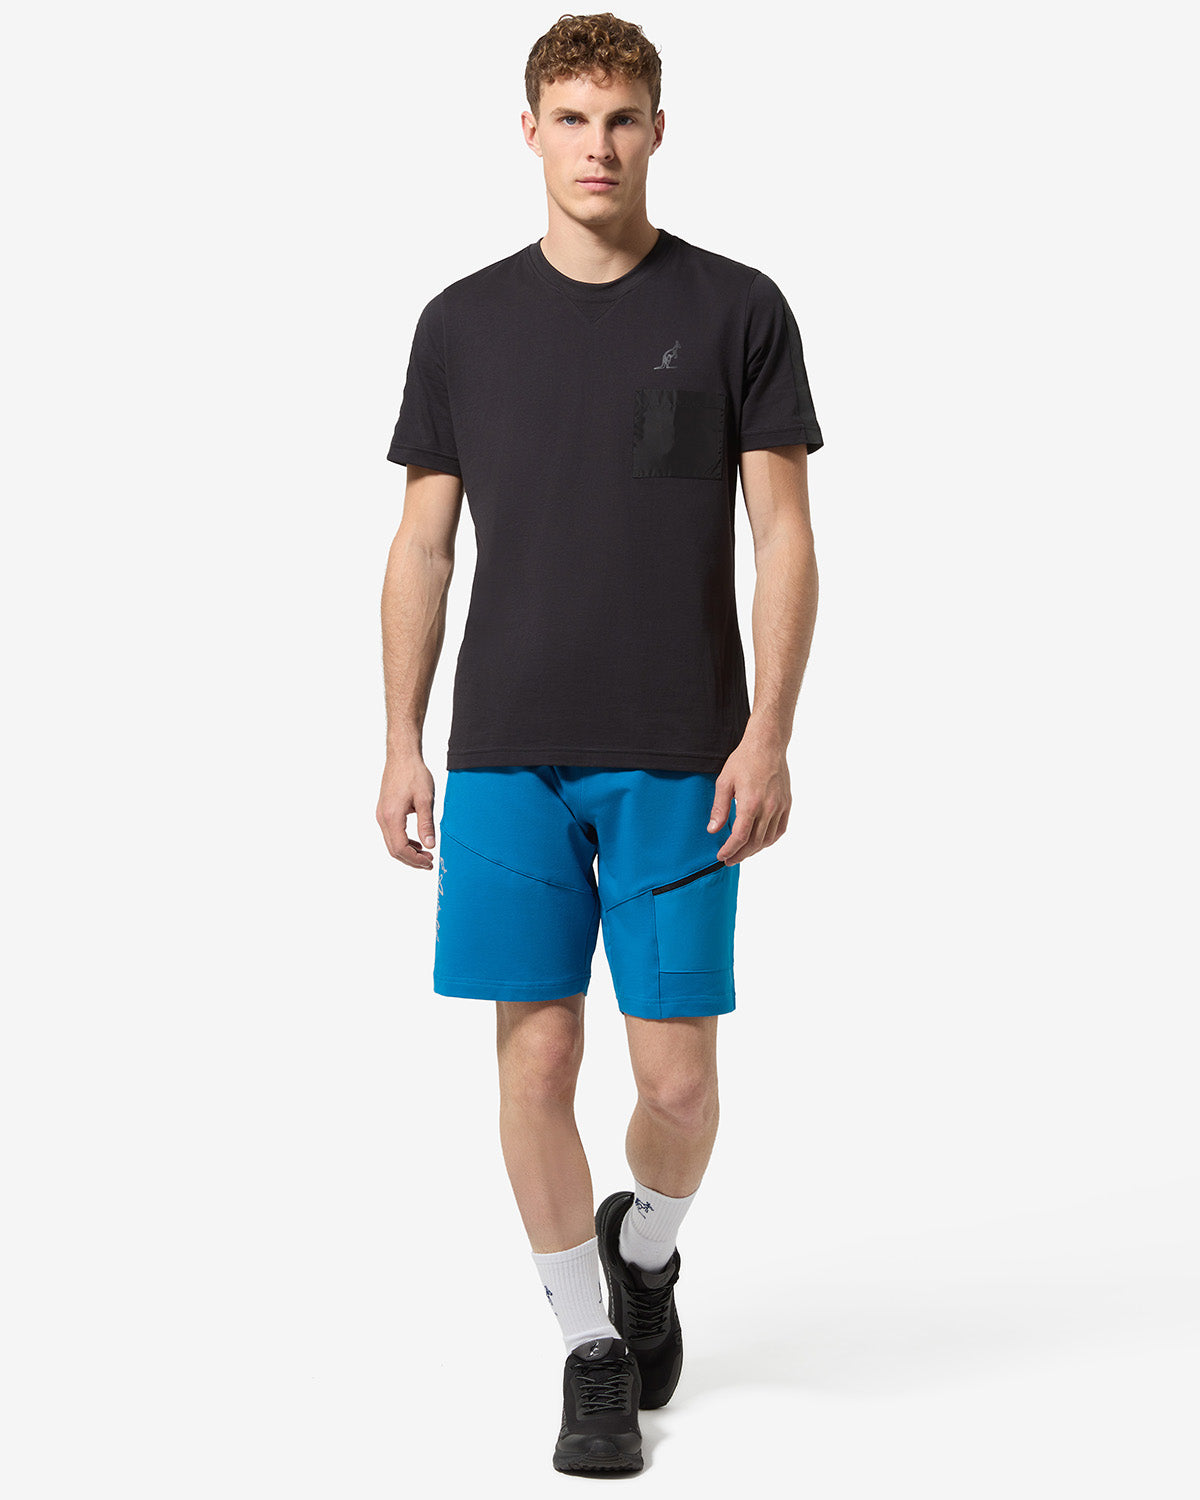 Gen Short: Australian Sportswear